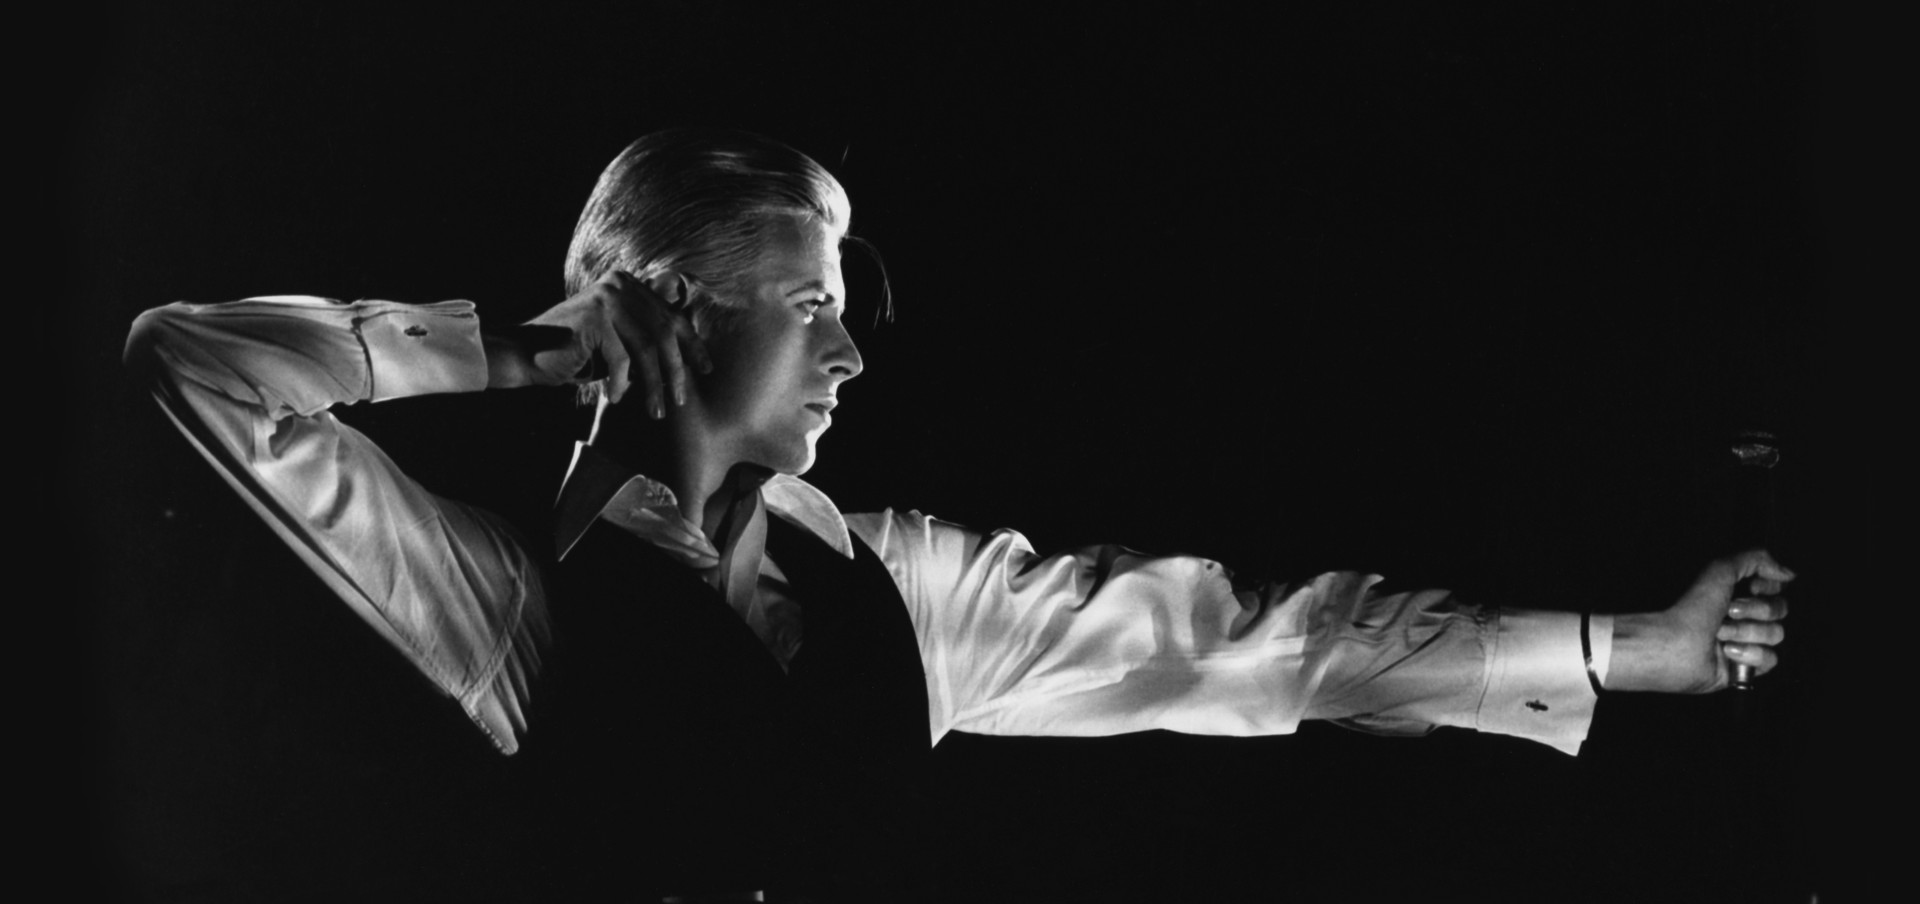 La colección privada de David Bowie llegará completa al museo Victoria & Albert de Londres